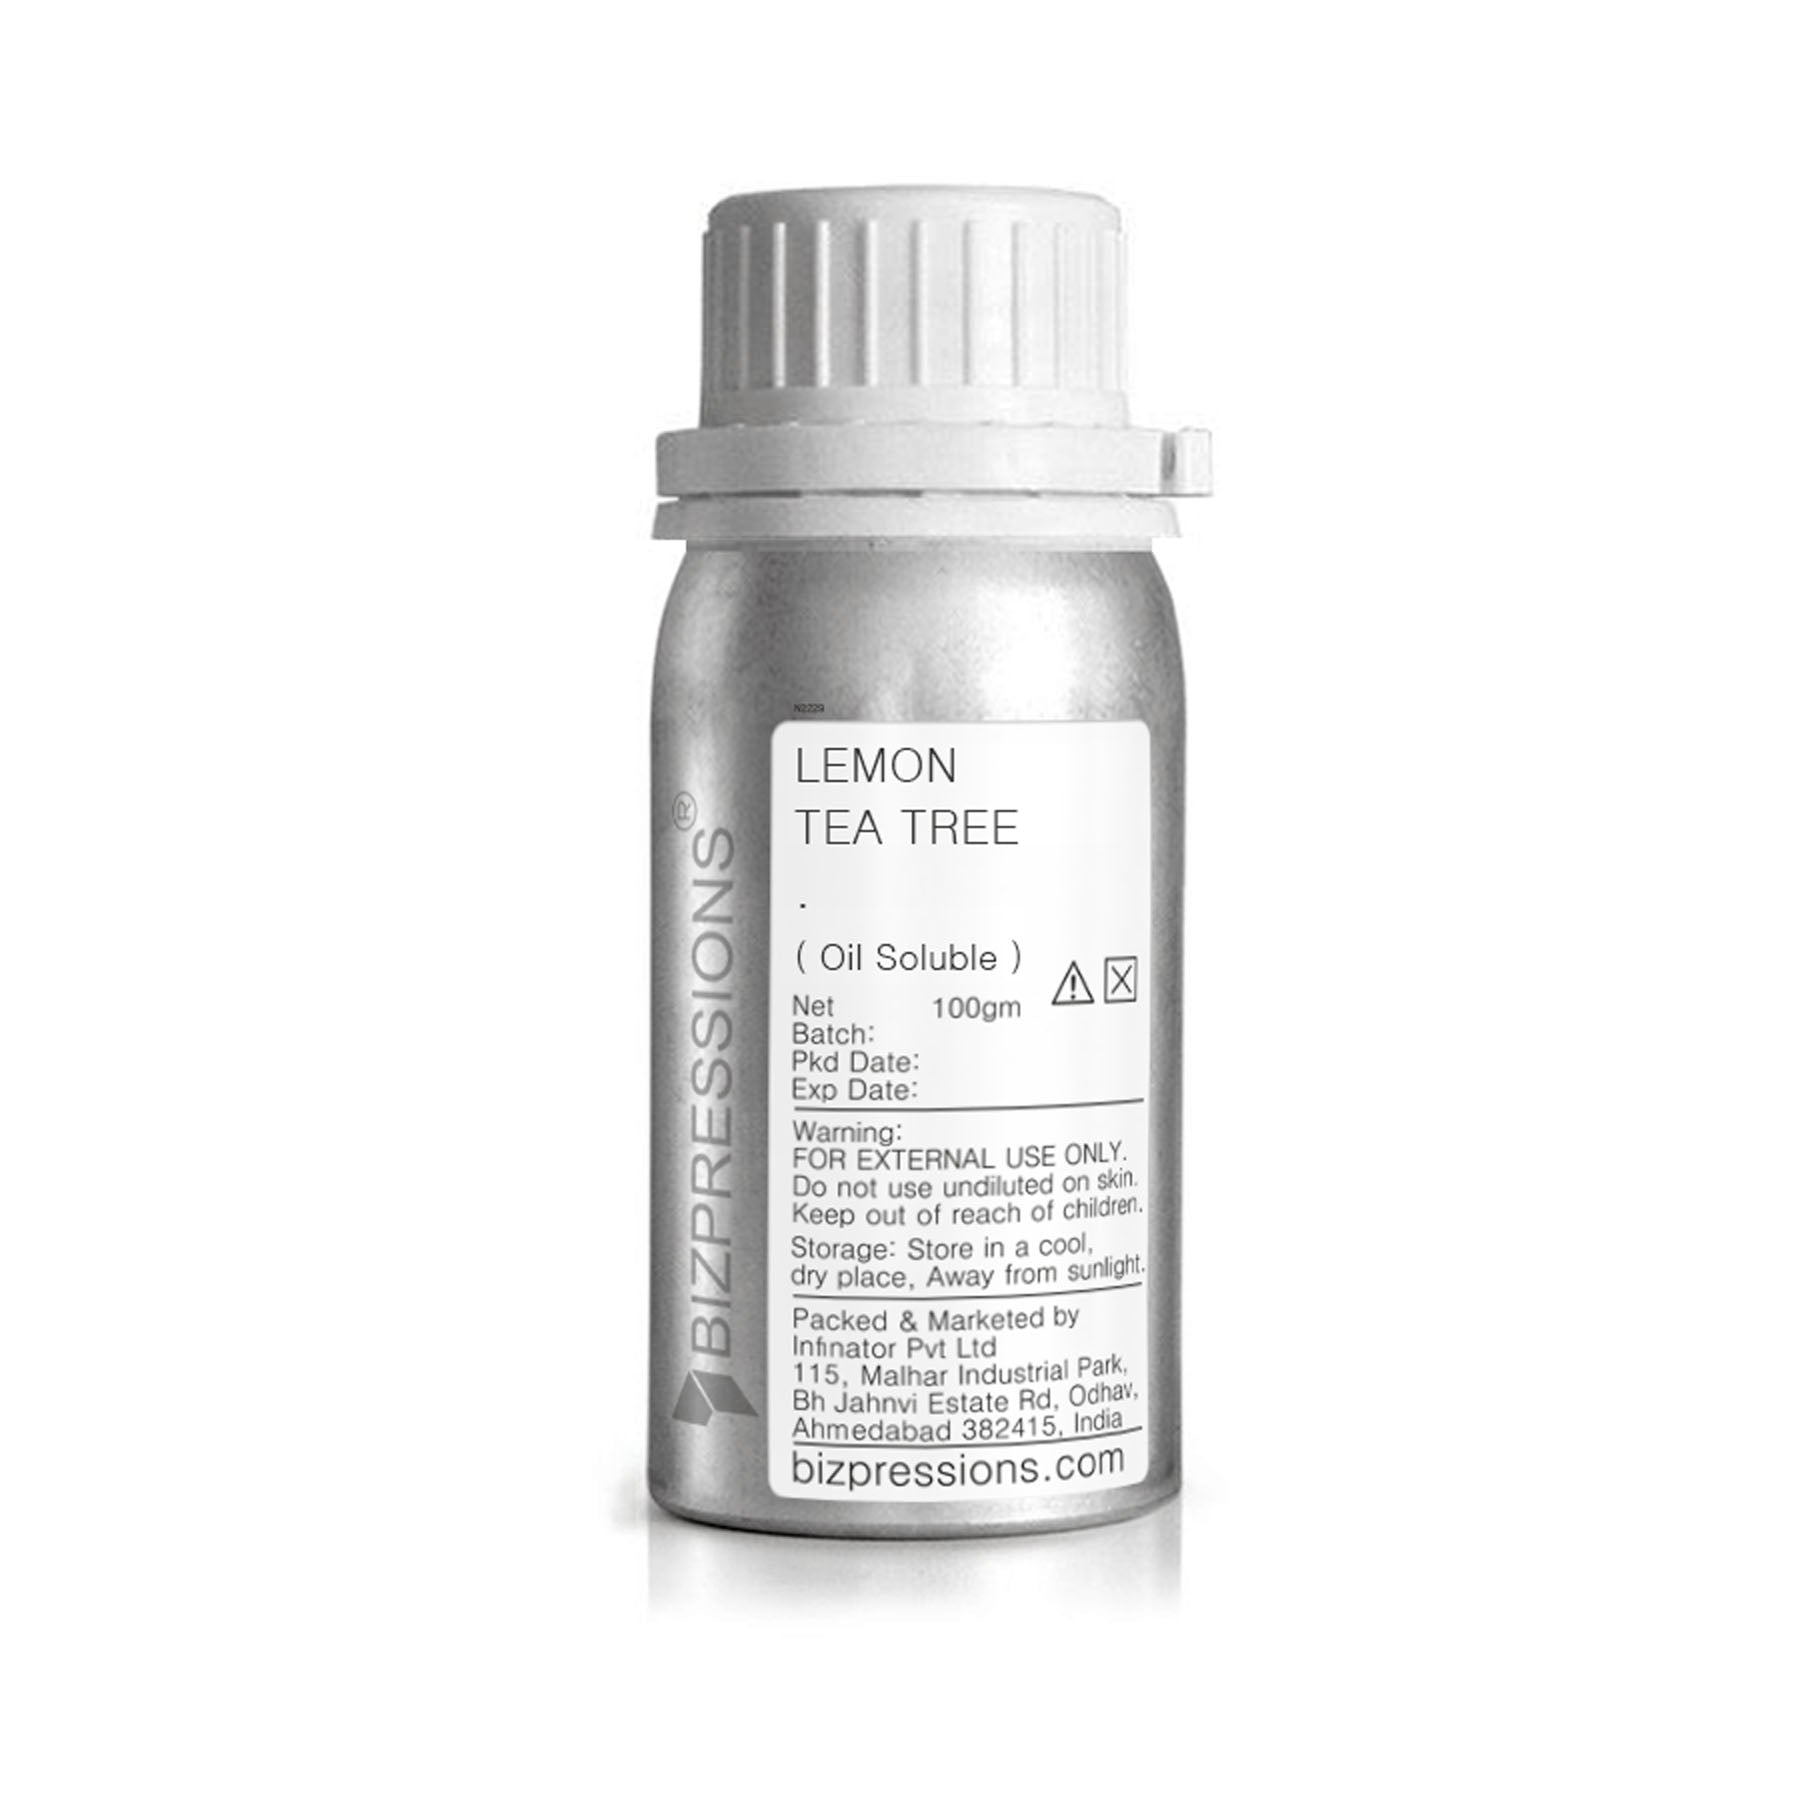 LEMON TEA TREE - Fragrance ( Oil Soluble ) - 100 gm